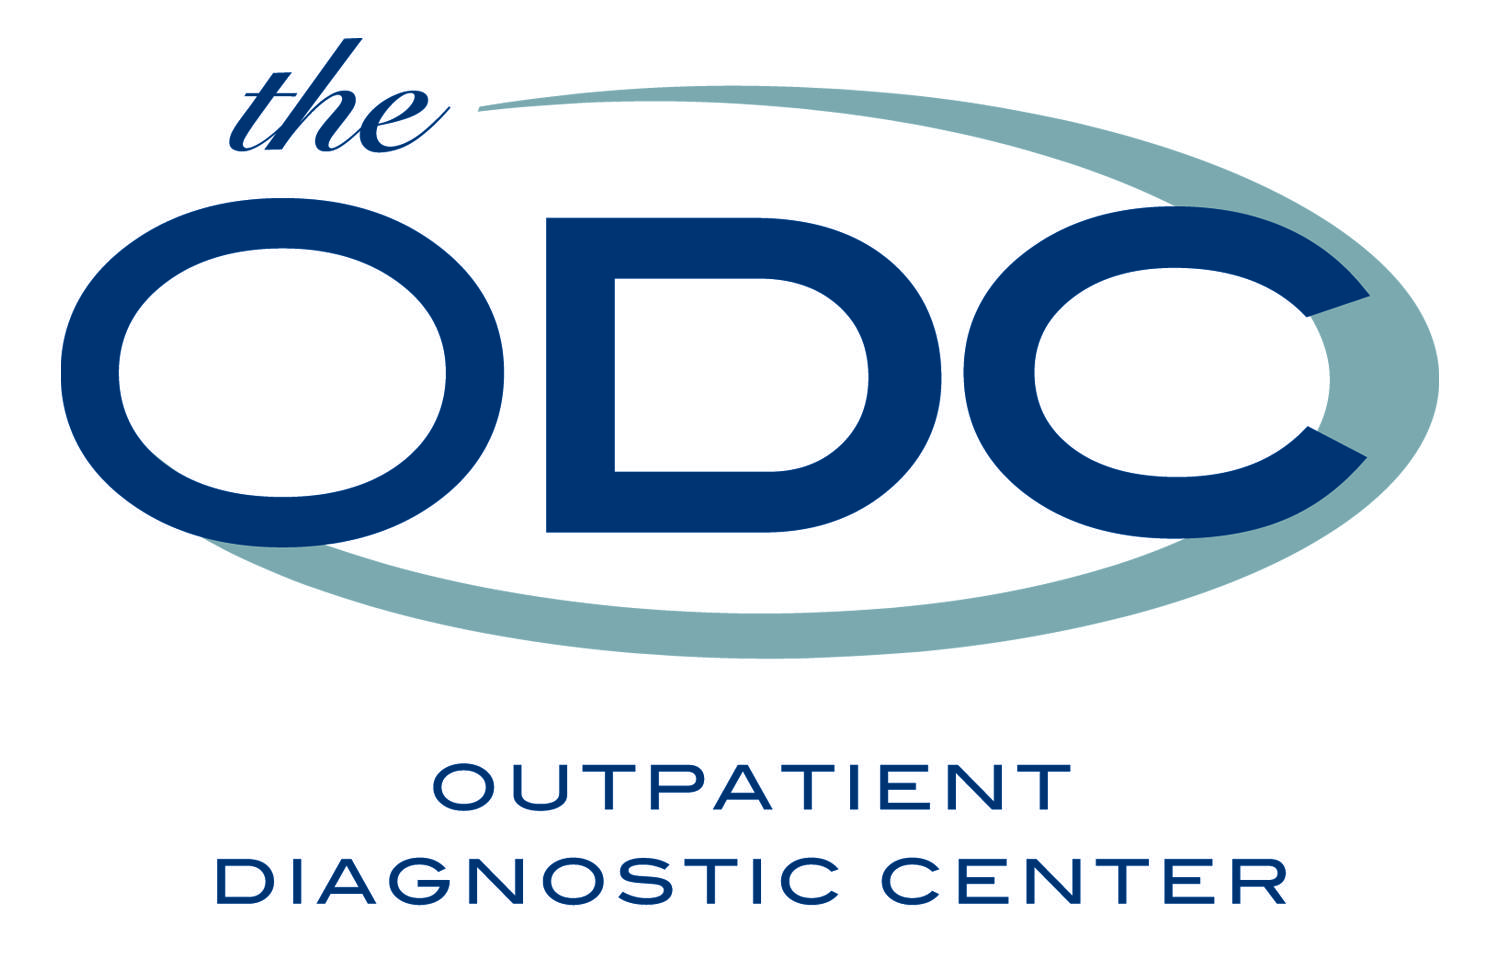 Beaumont Outpatient Logo - Outpatient Diagnostic Center Logo ODC - eRAD | PACS Radiology ...